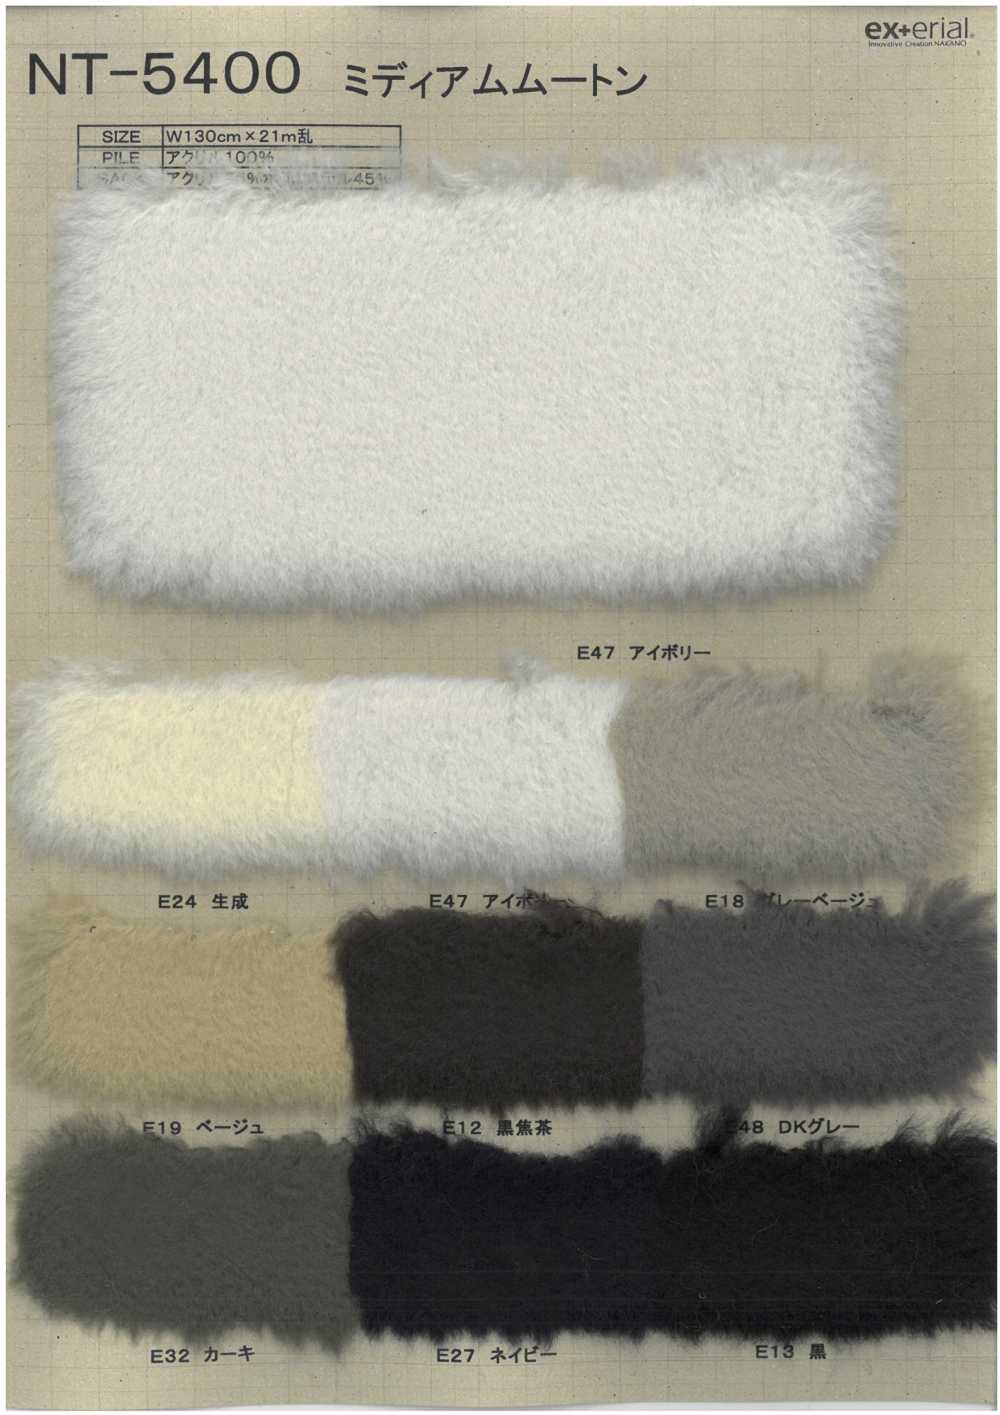 NT-5400 Pelliccia Artigianale [shearling Medio][Tessile / Tessuto] Industria Delle Magliette A Nakano